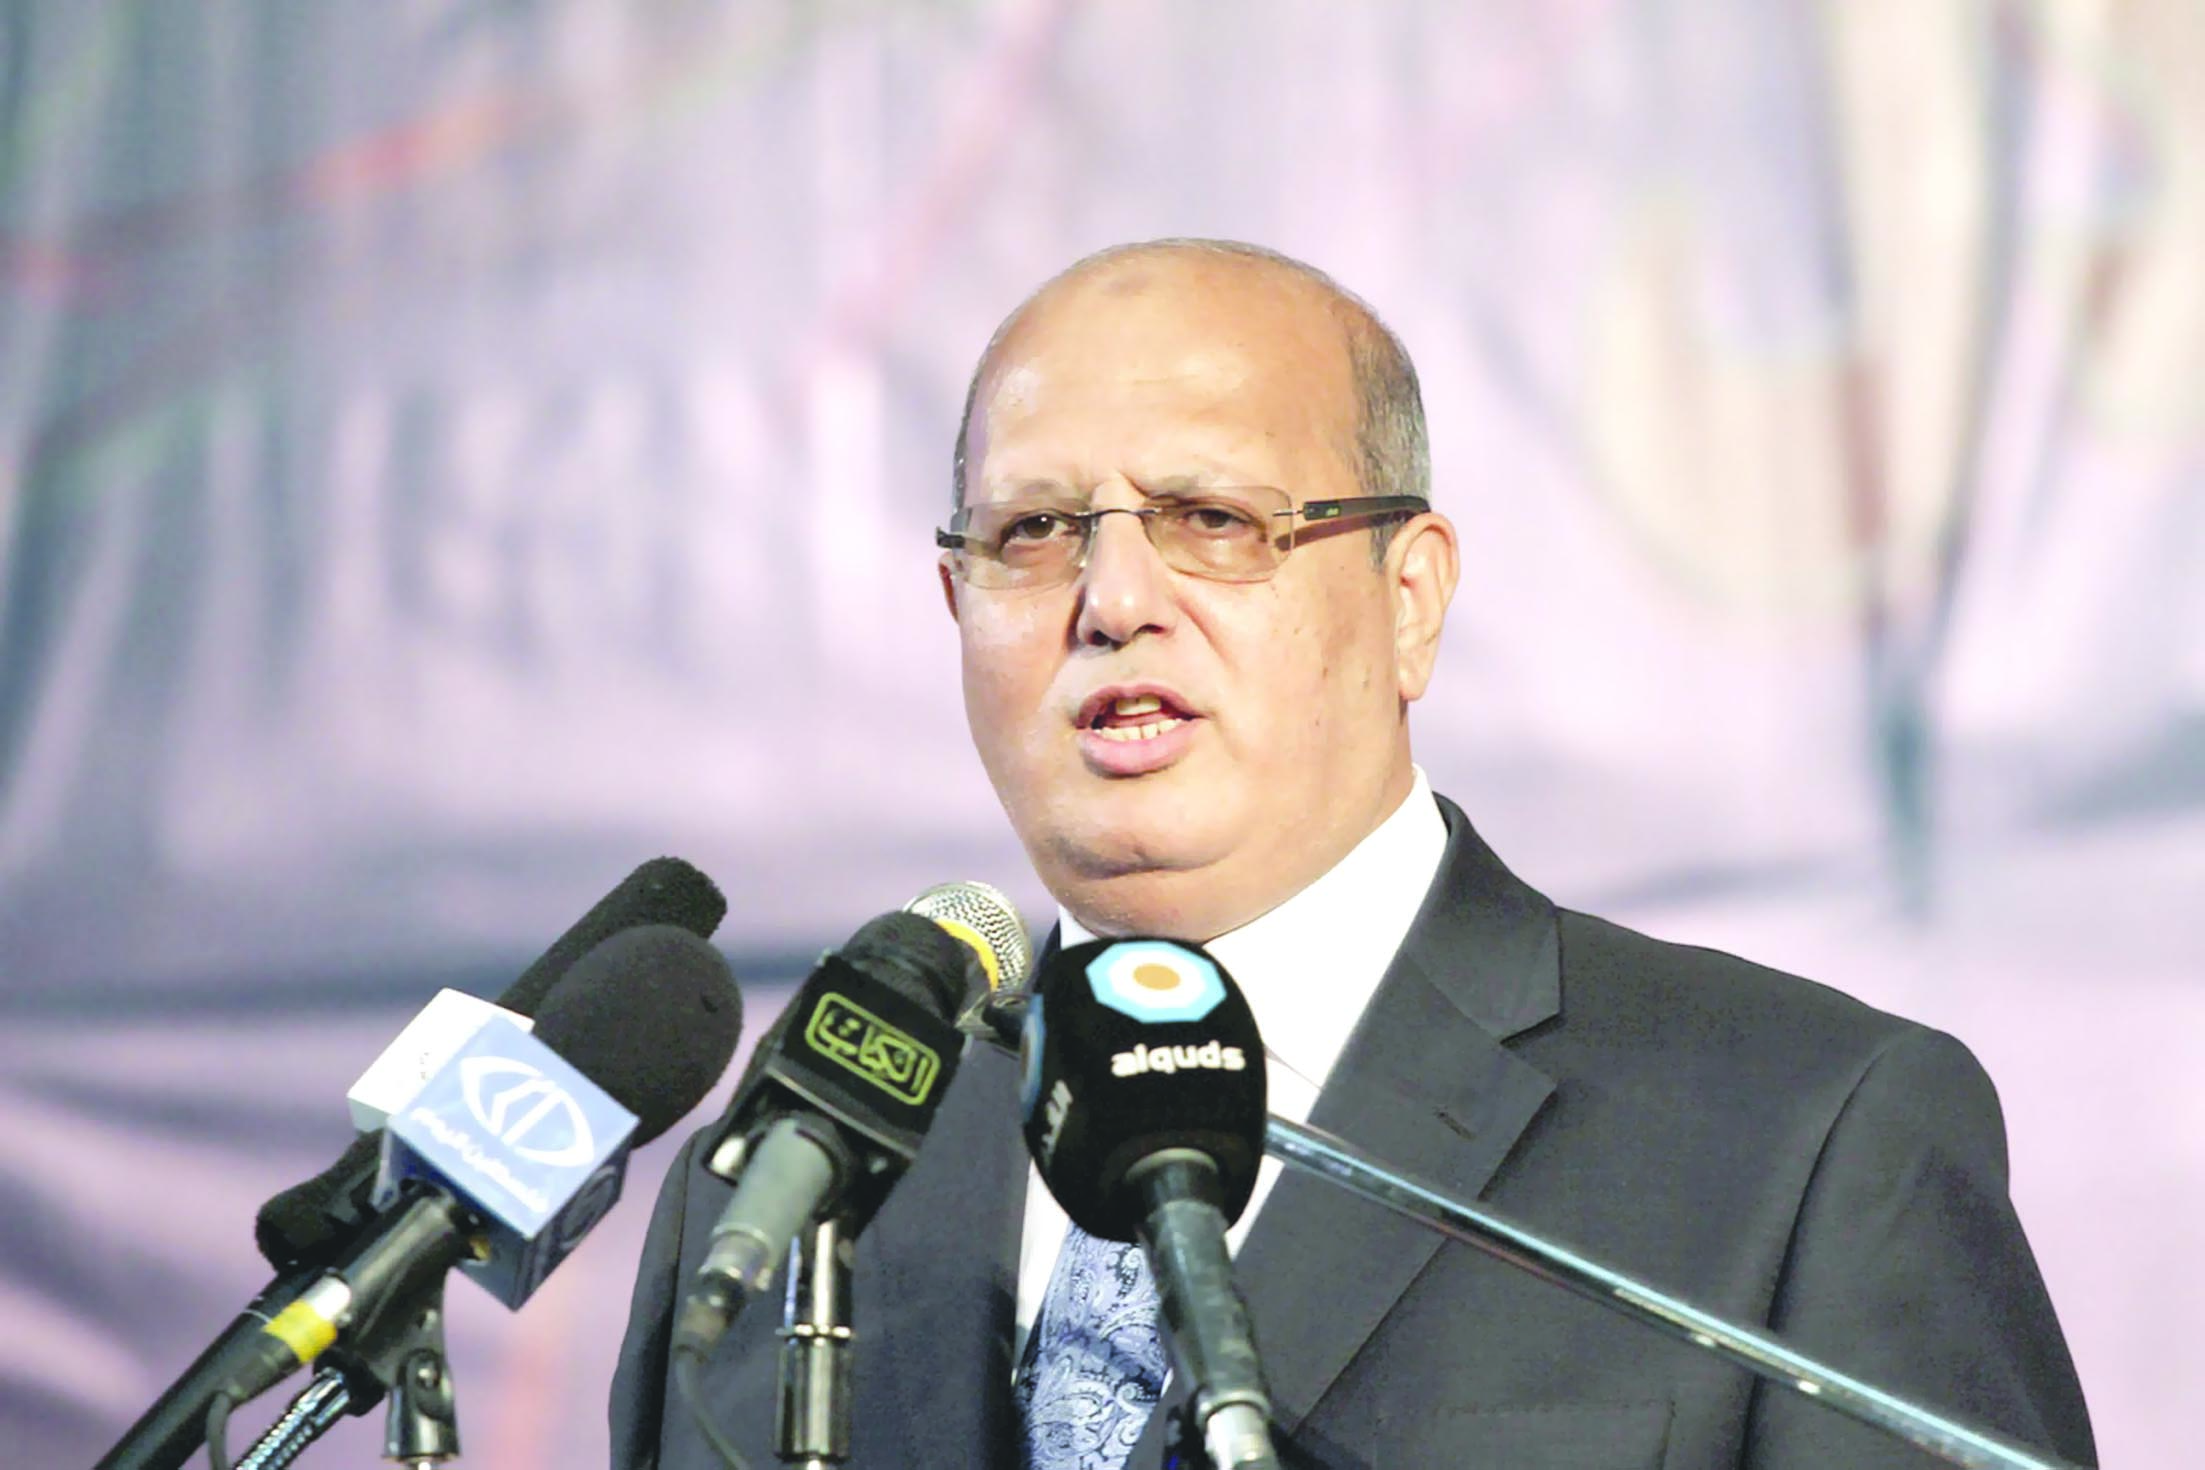 الخضري: نجاح الانتخابات المحلية خطوة لانجاز المصالحة